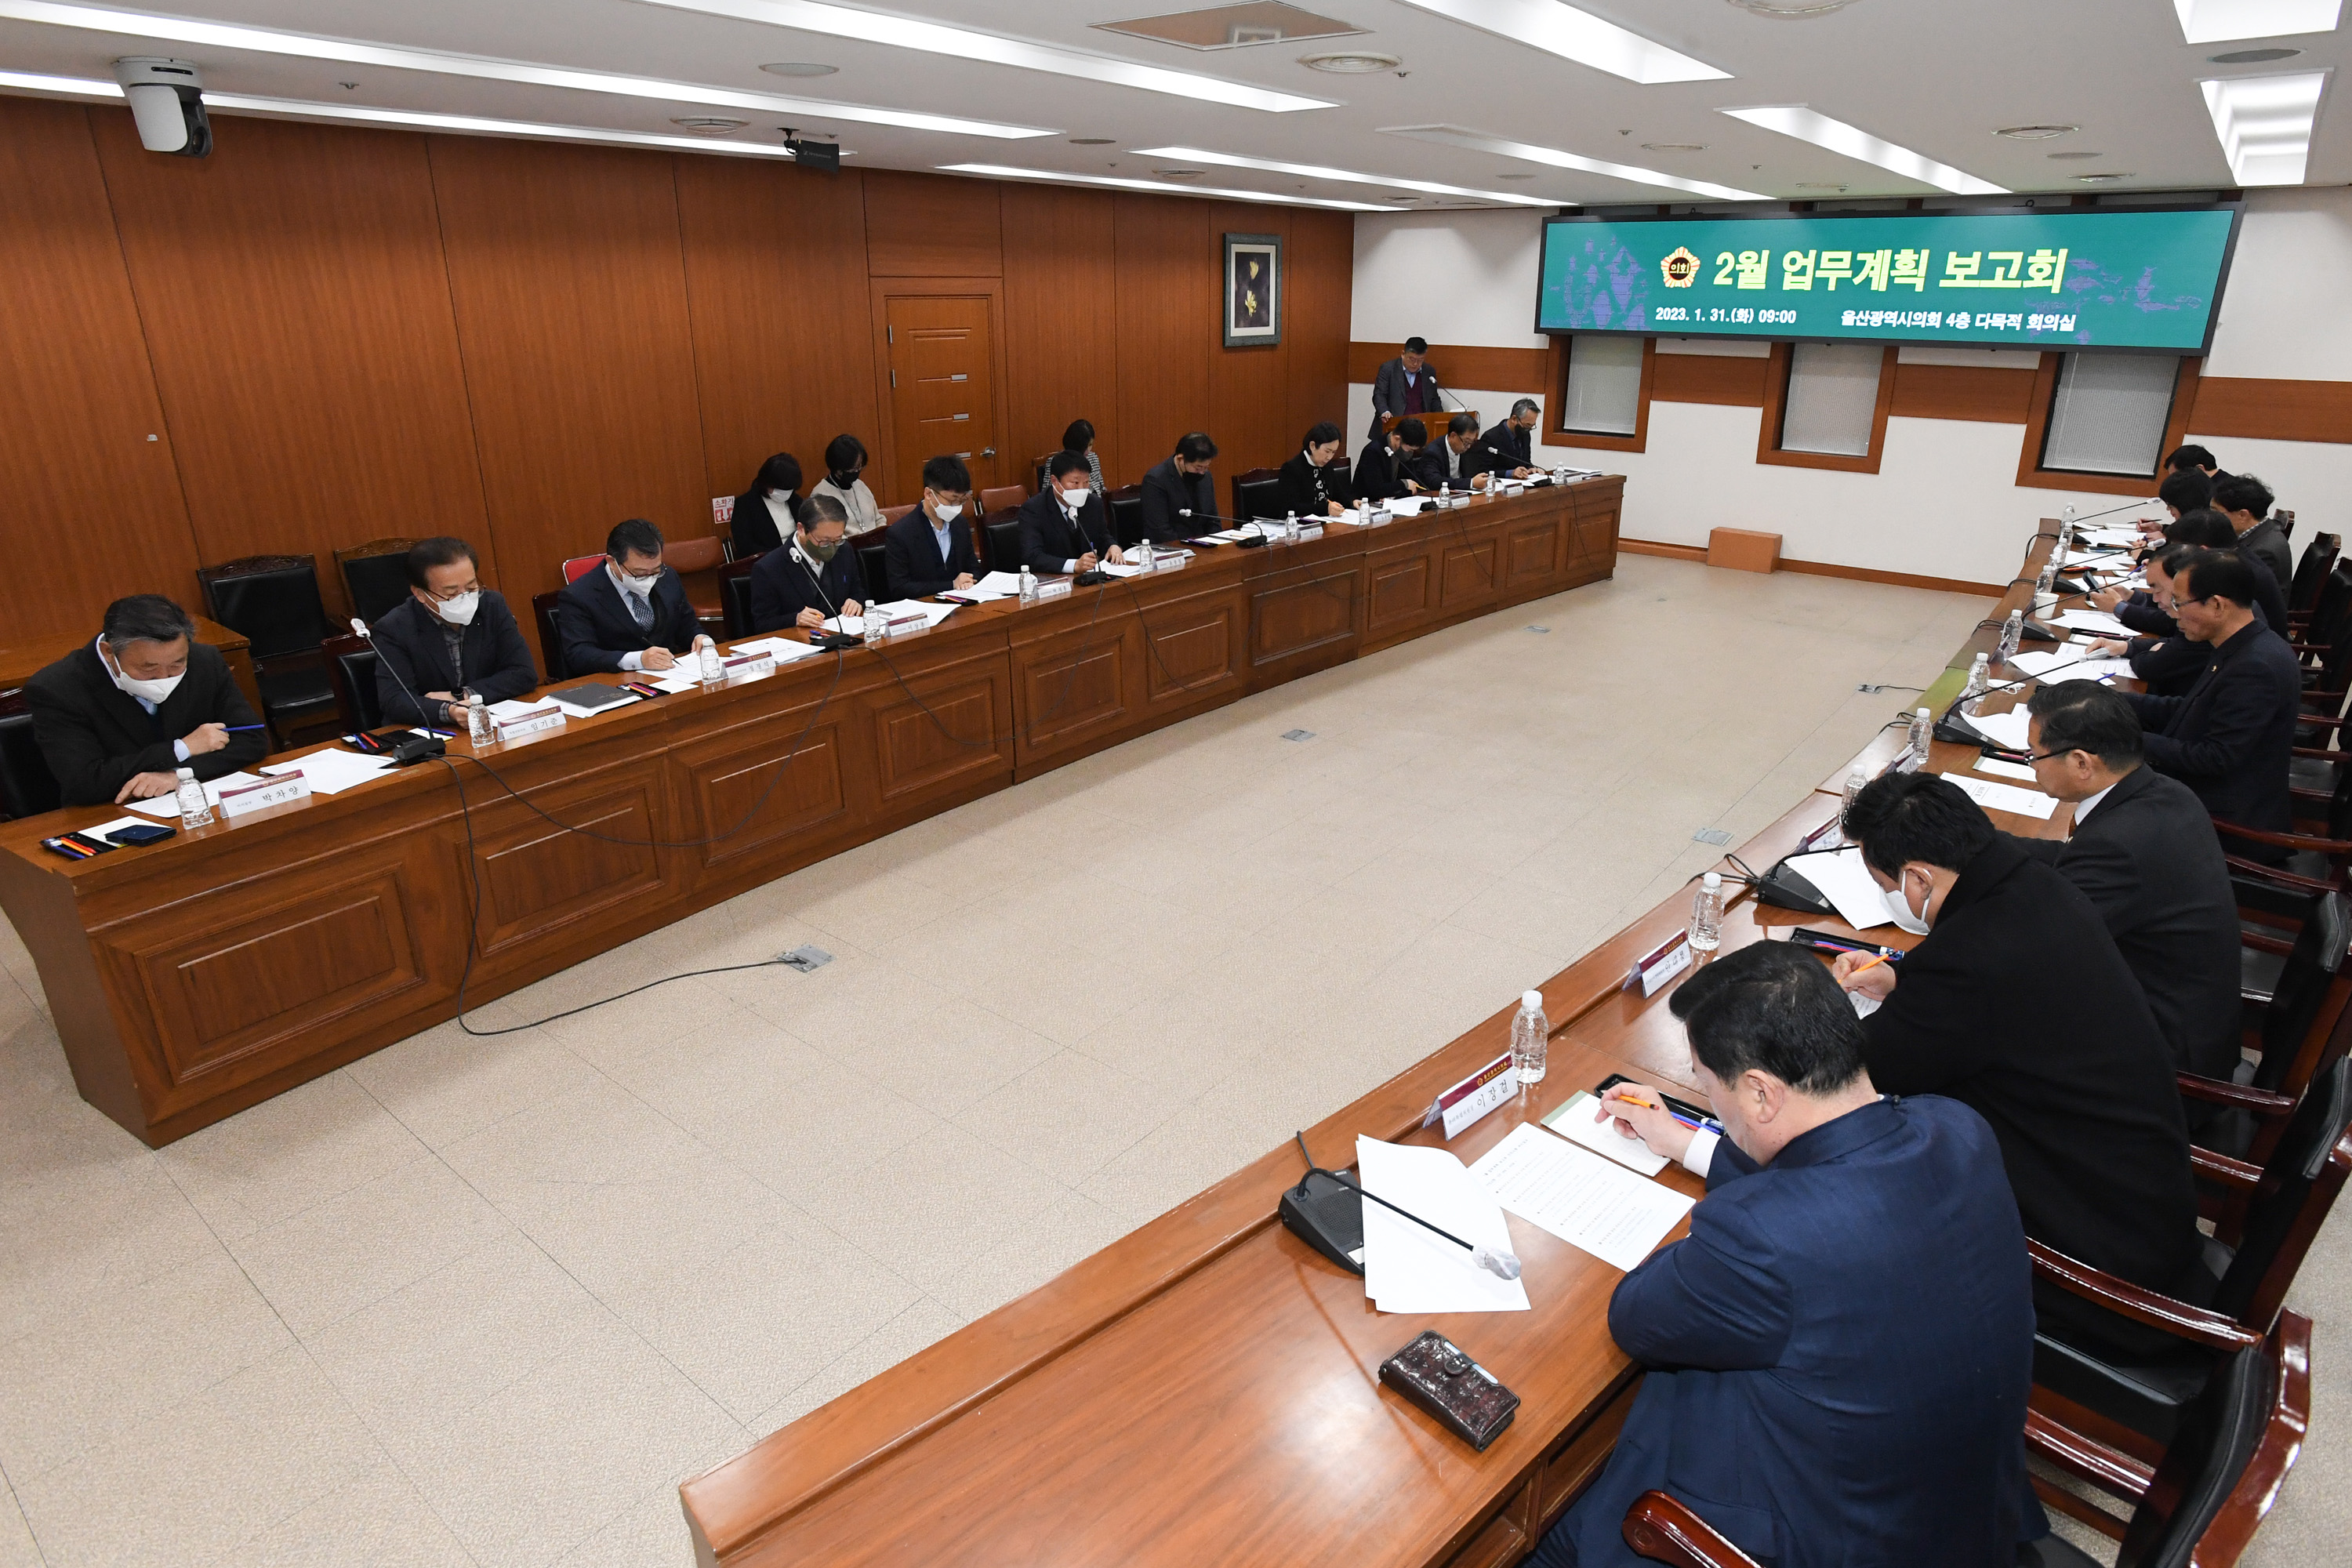 울산광역시의회, 2월 월간업무계획 보고회9